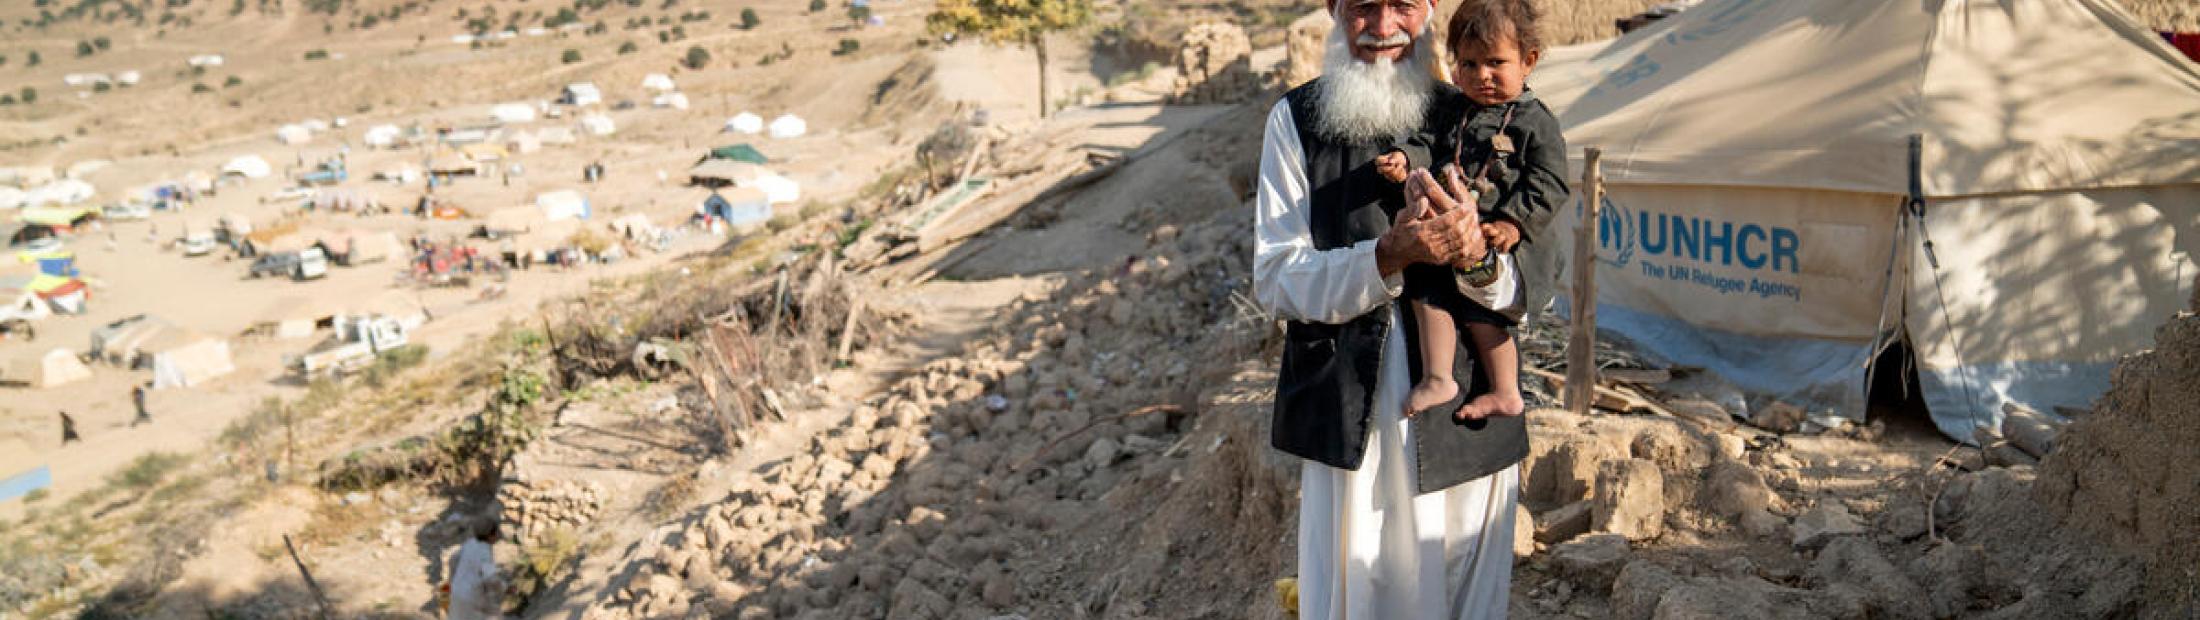 O Afeganistão está a atravessar uma das piores crises humanitárias do mundo